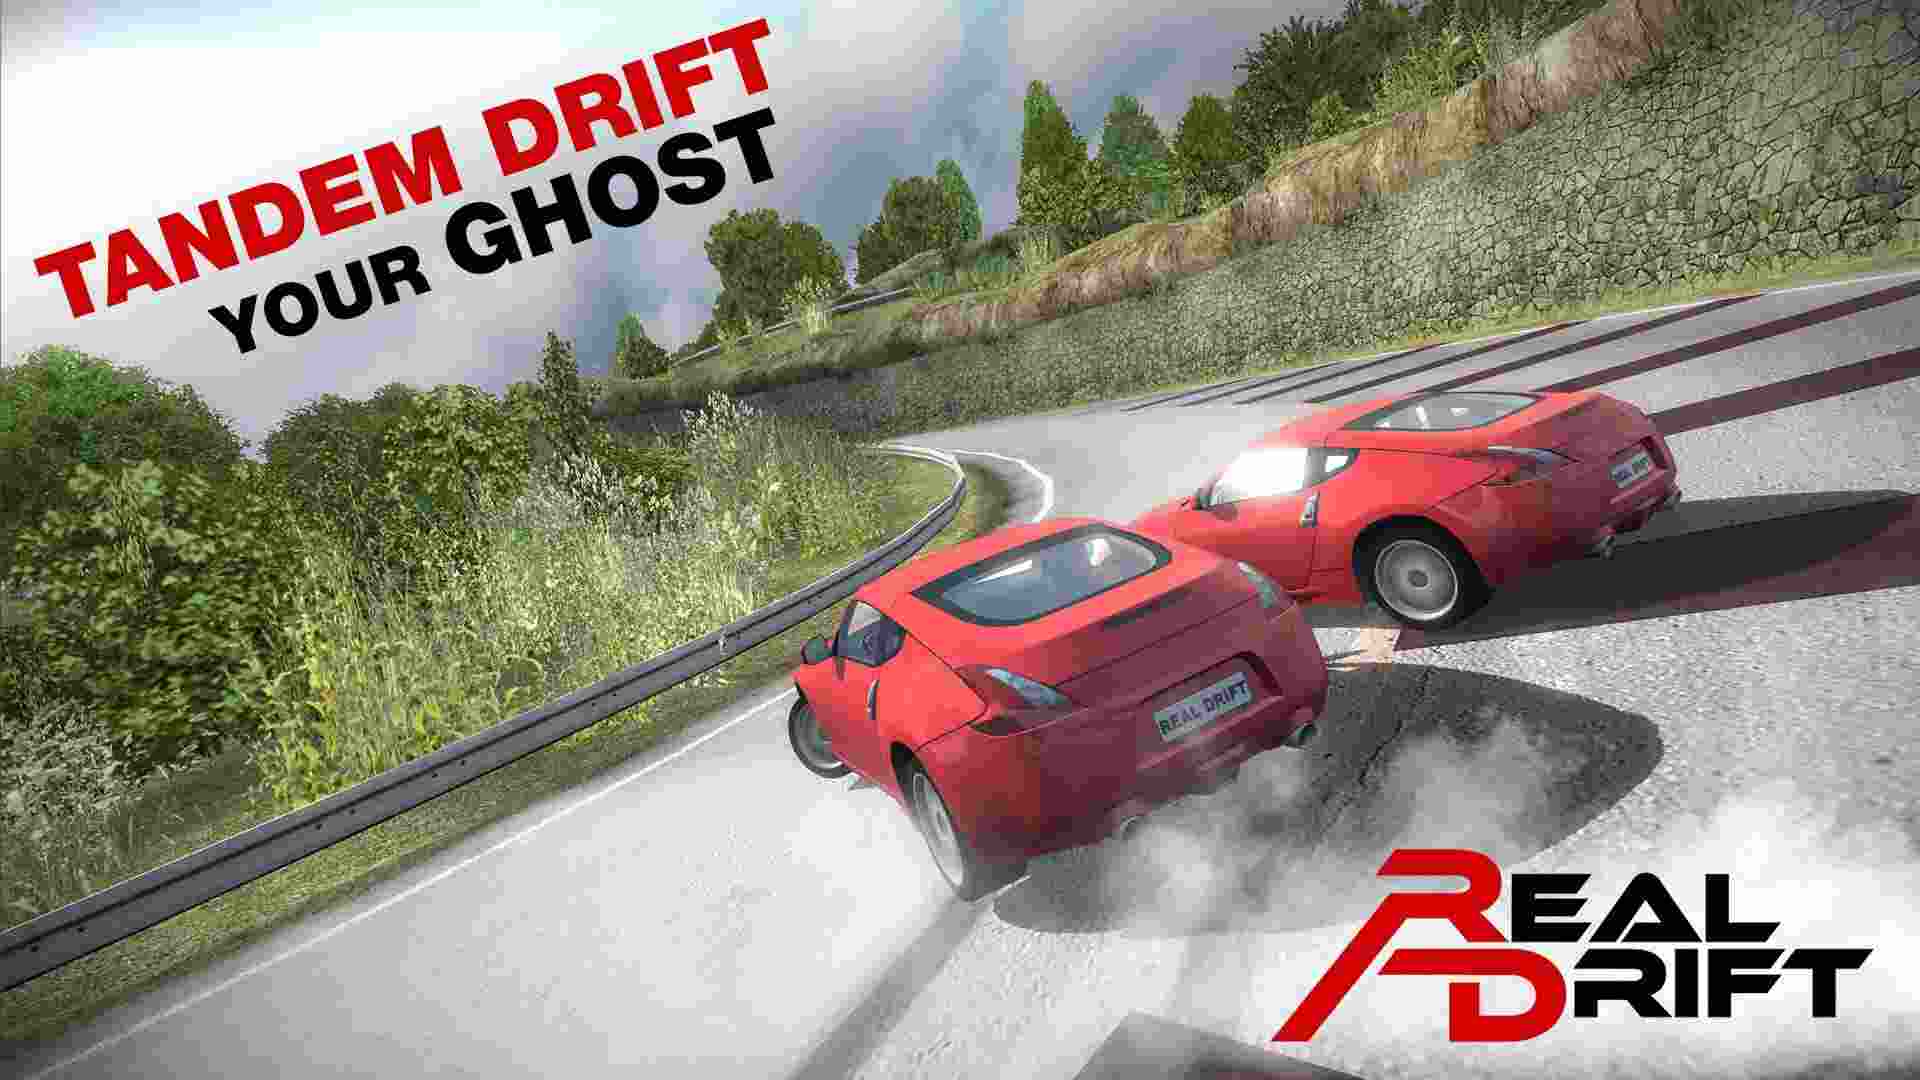 Real Drift Car Racing Mod